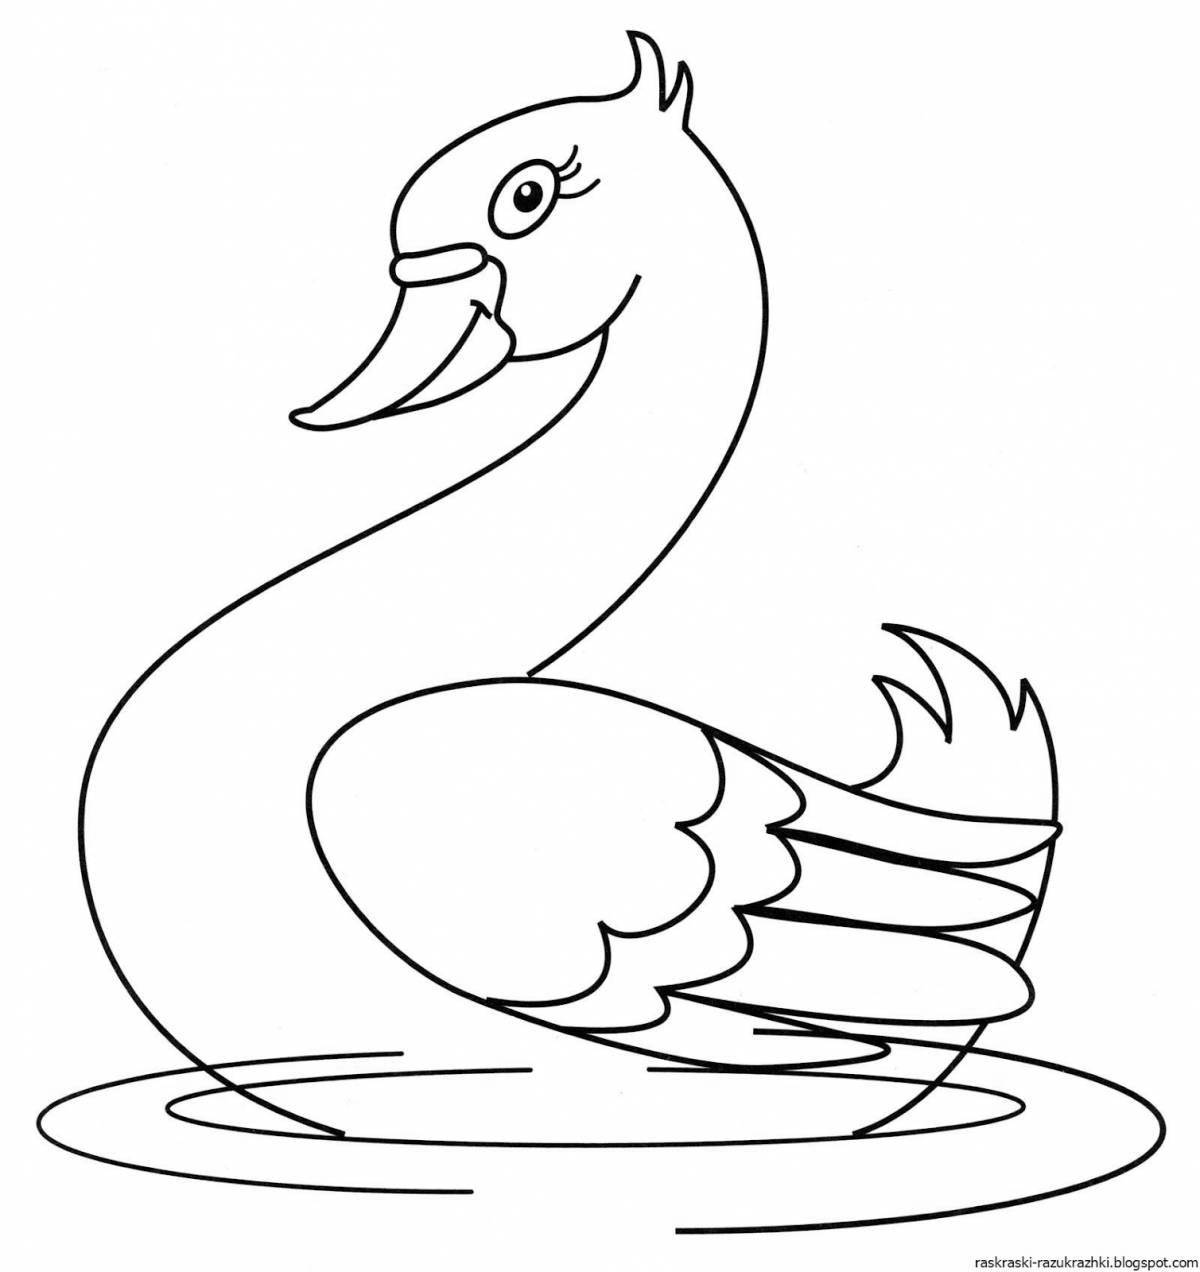 Увлекательная раскраска «лебедь» для детей